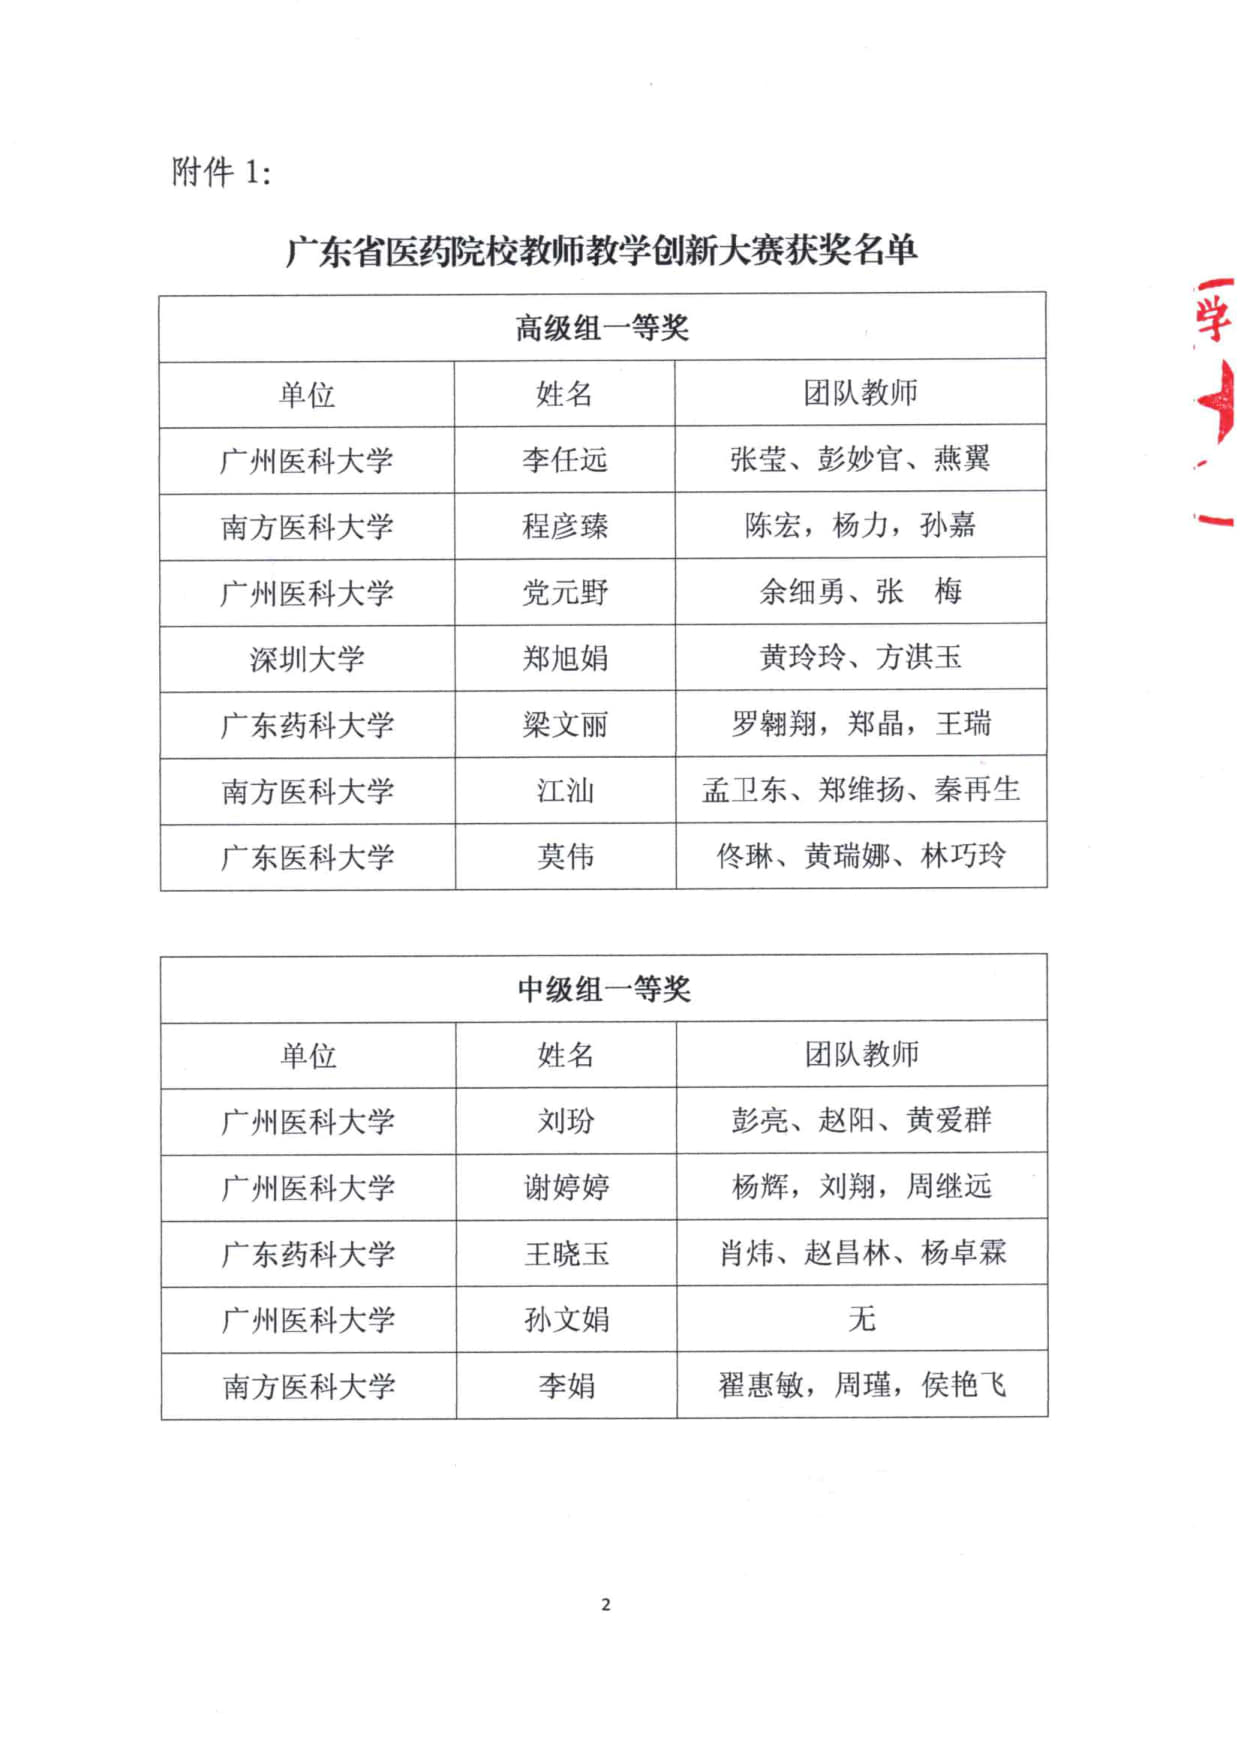 关于公布广东省医药院校教师教学创新大赛获奖名单的通知(1)_2.jpg